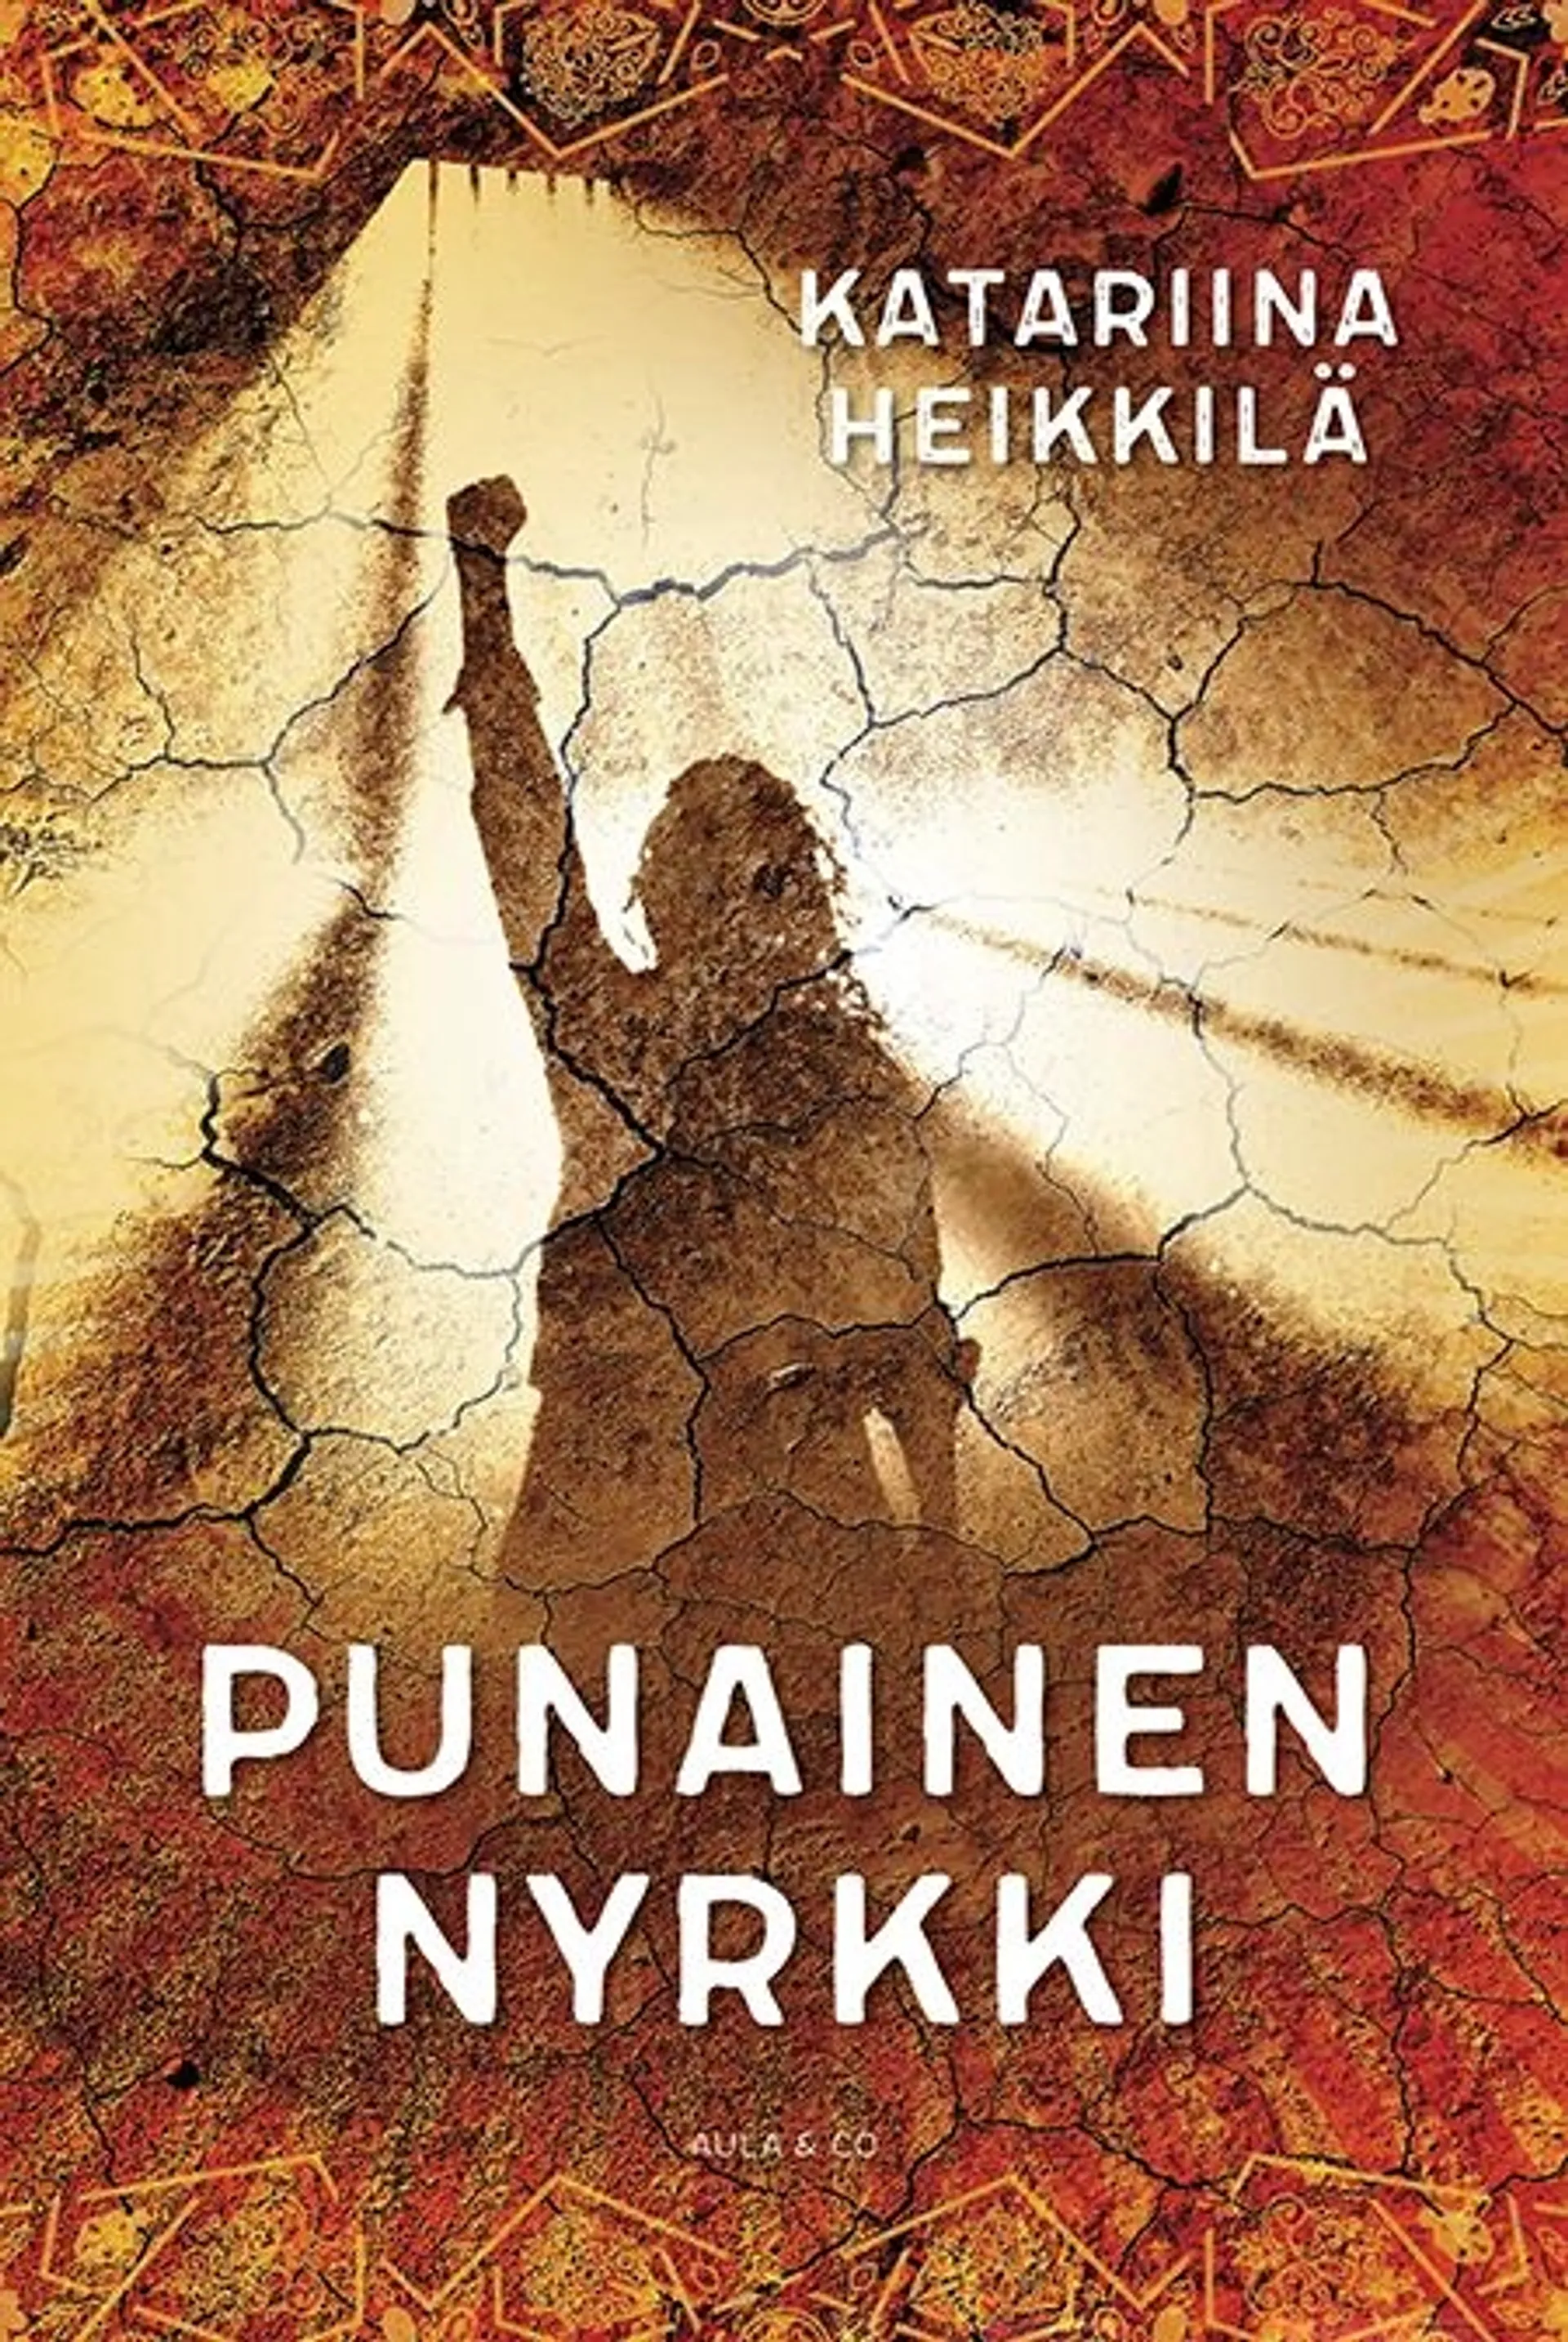 Heikkilä, Punainen nyrkki